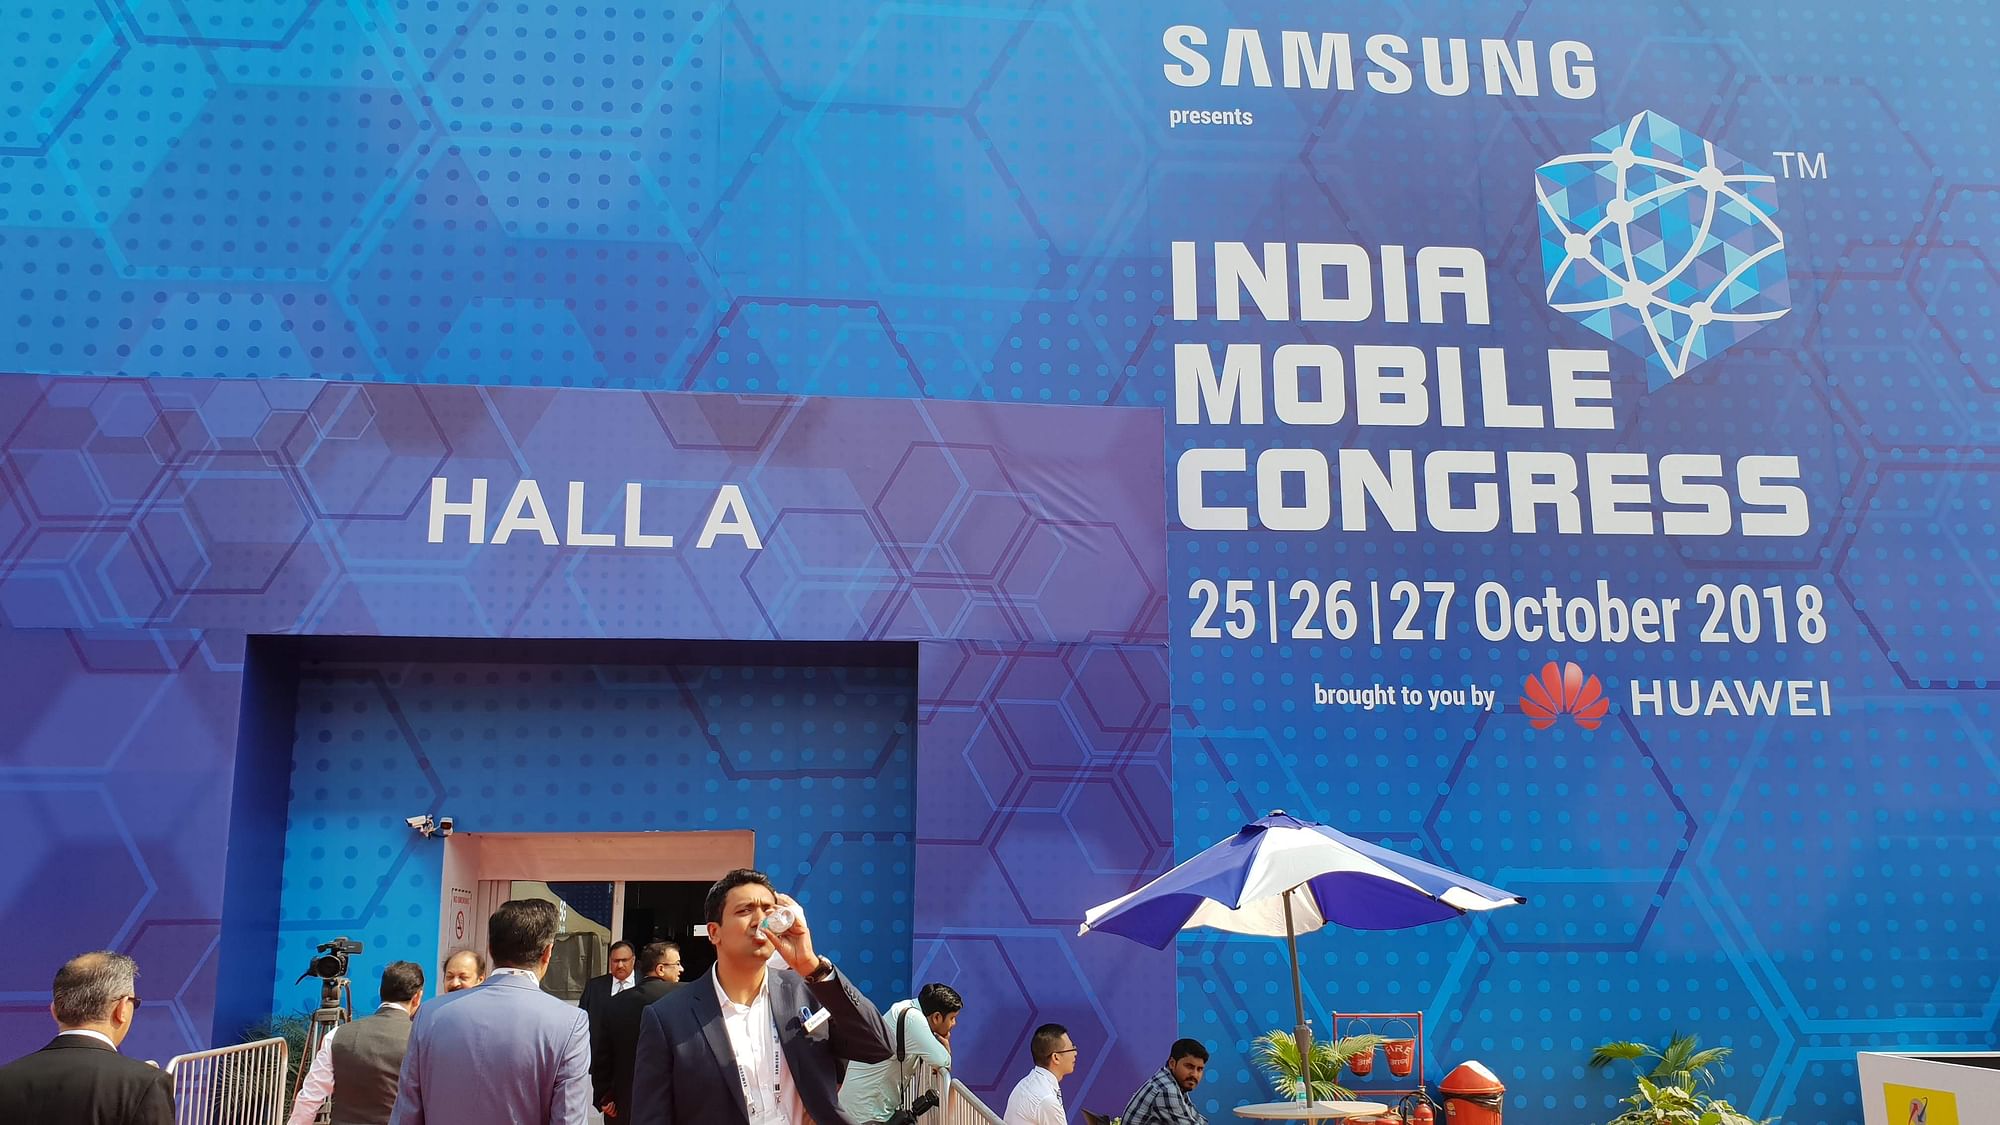 India Mobile Congress 2018 kicks off in Delhi.